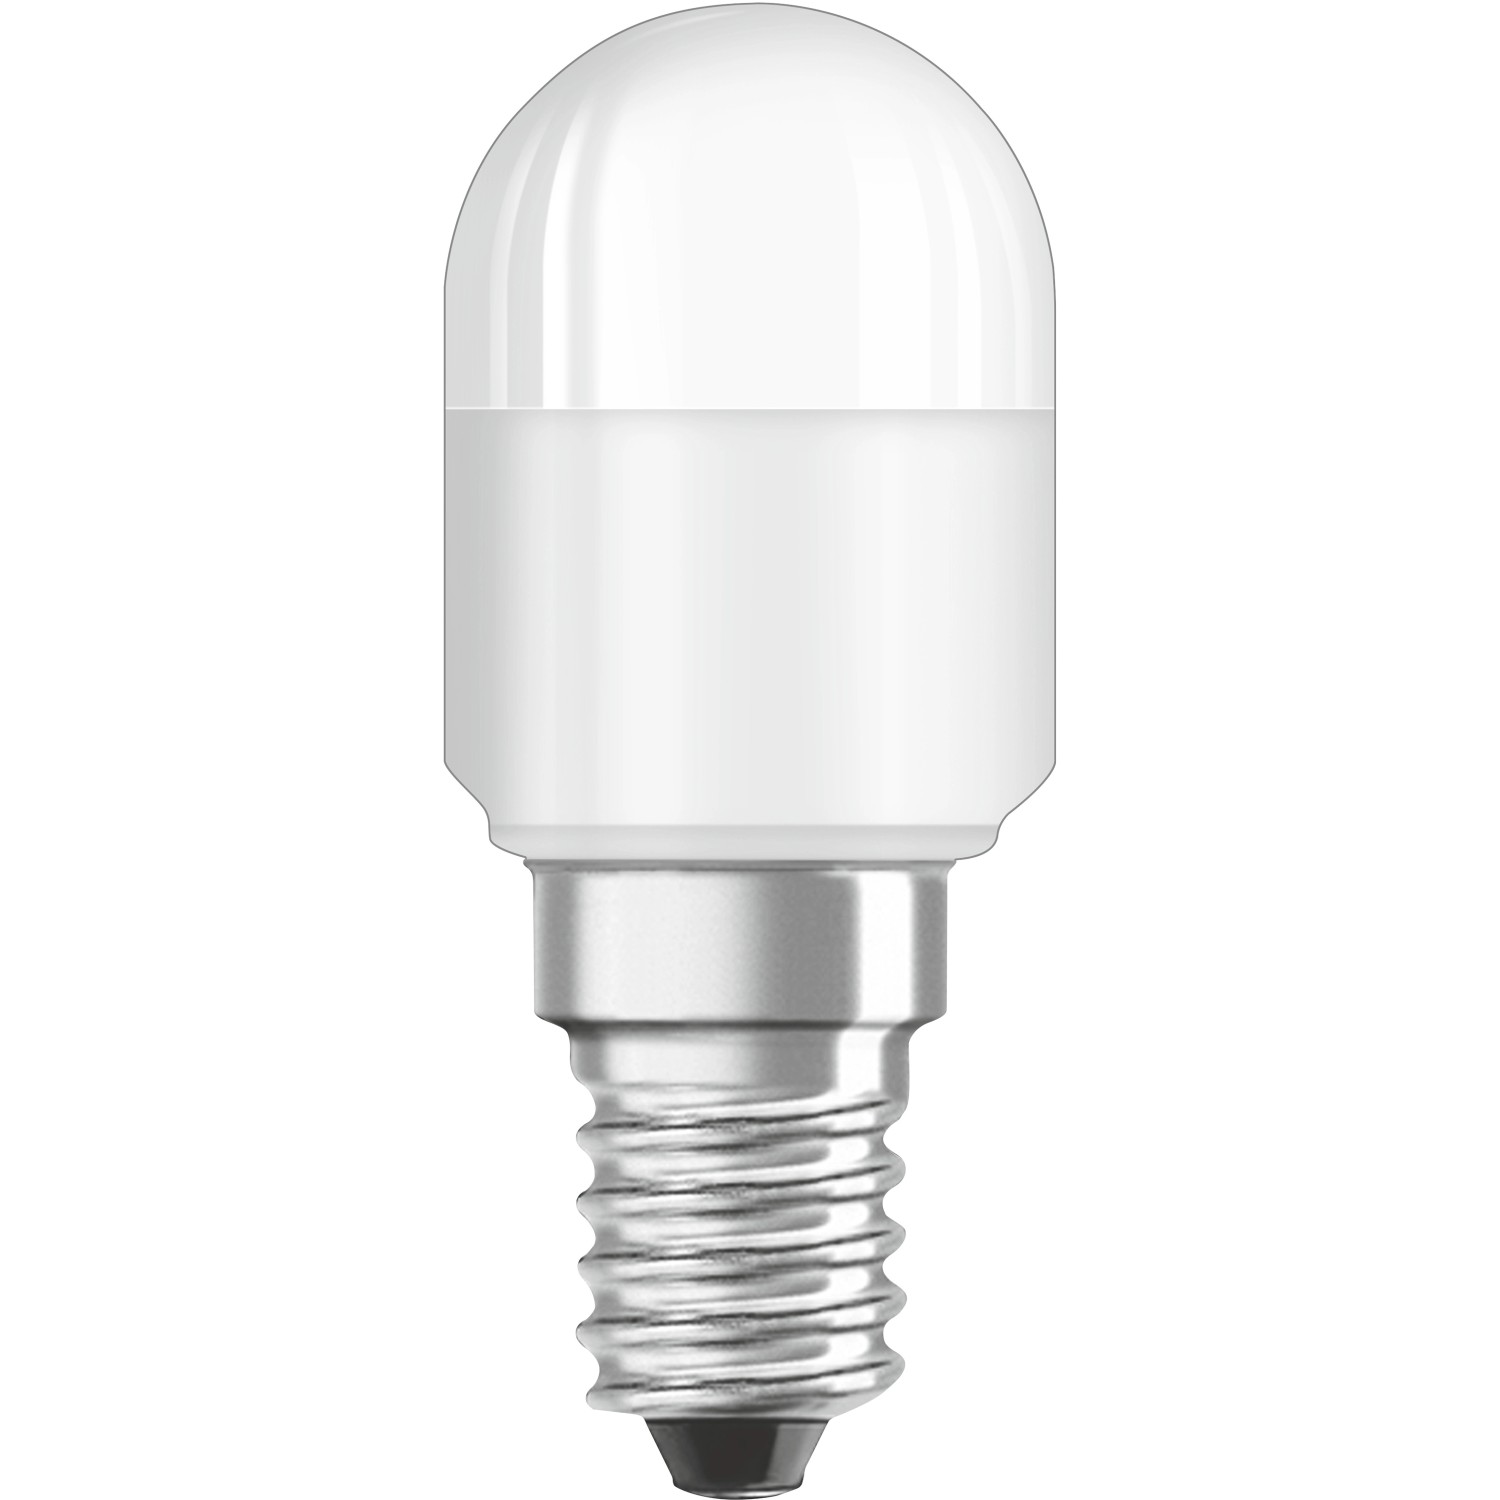  Bellalux LED-Speziallampe T26 E14 / 2,3W (200 lm) Warmweiß